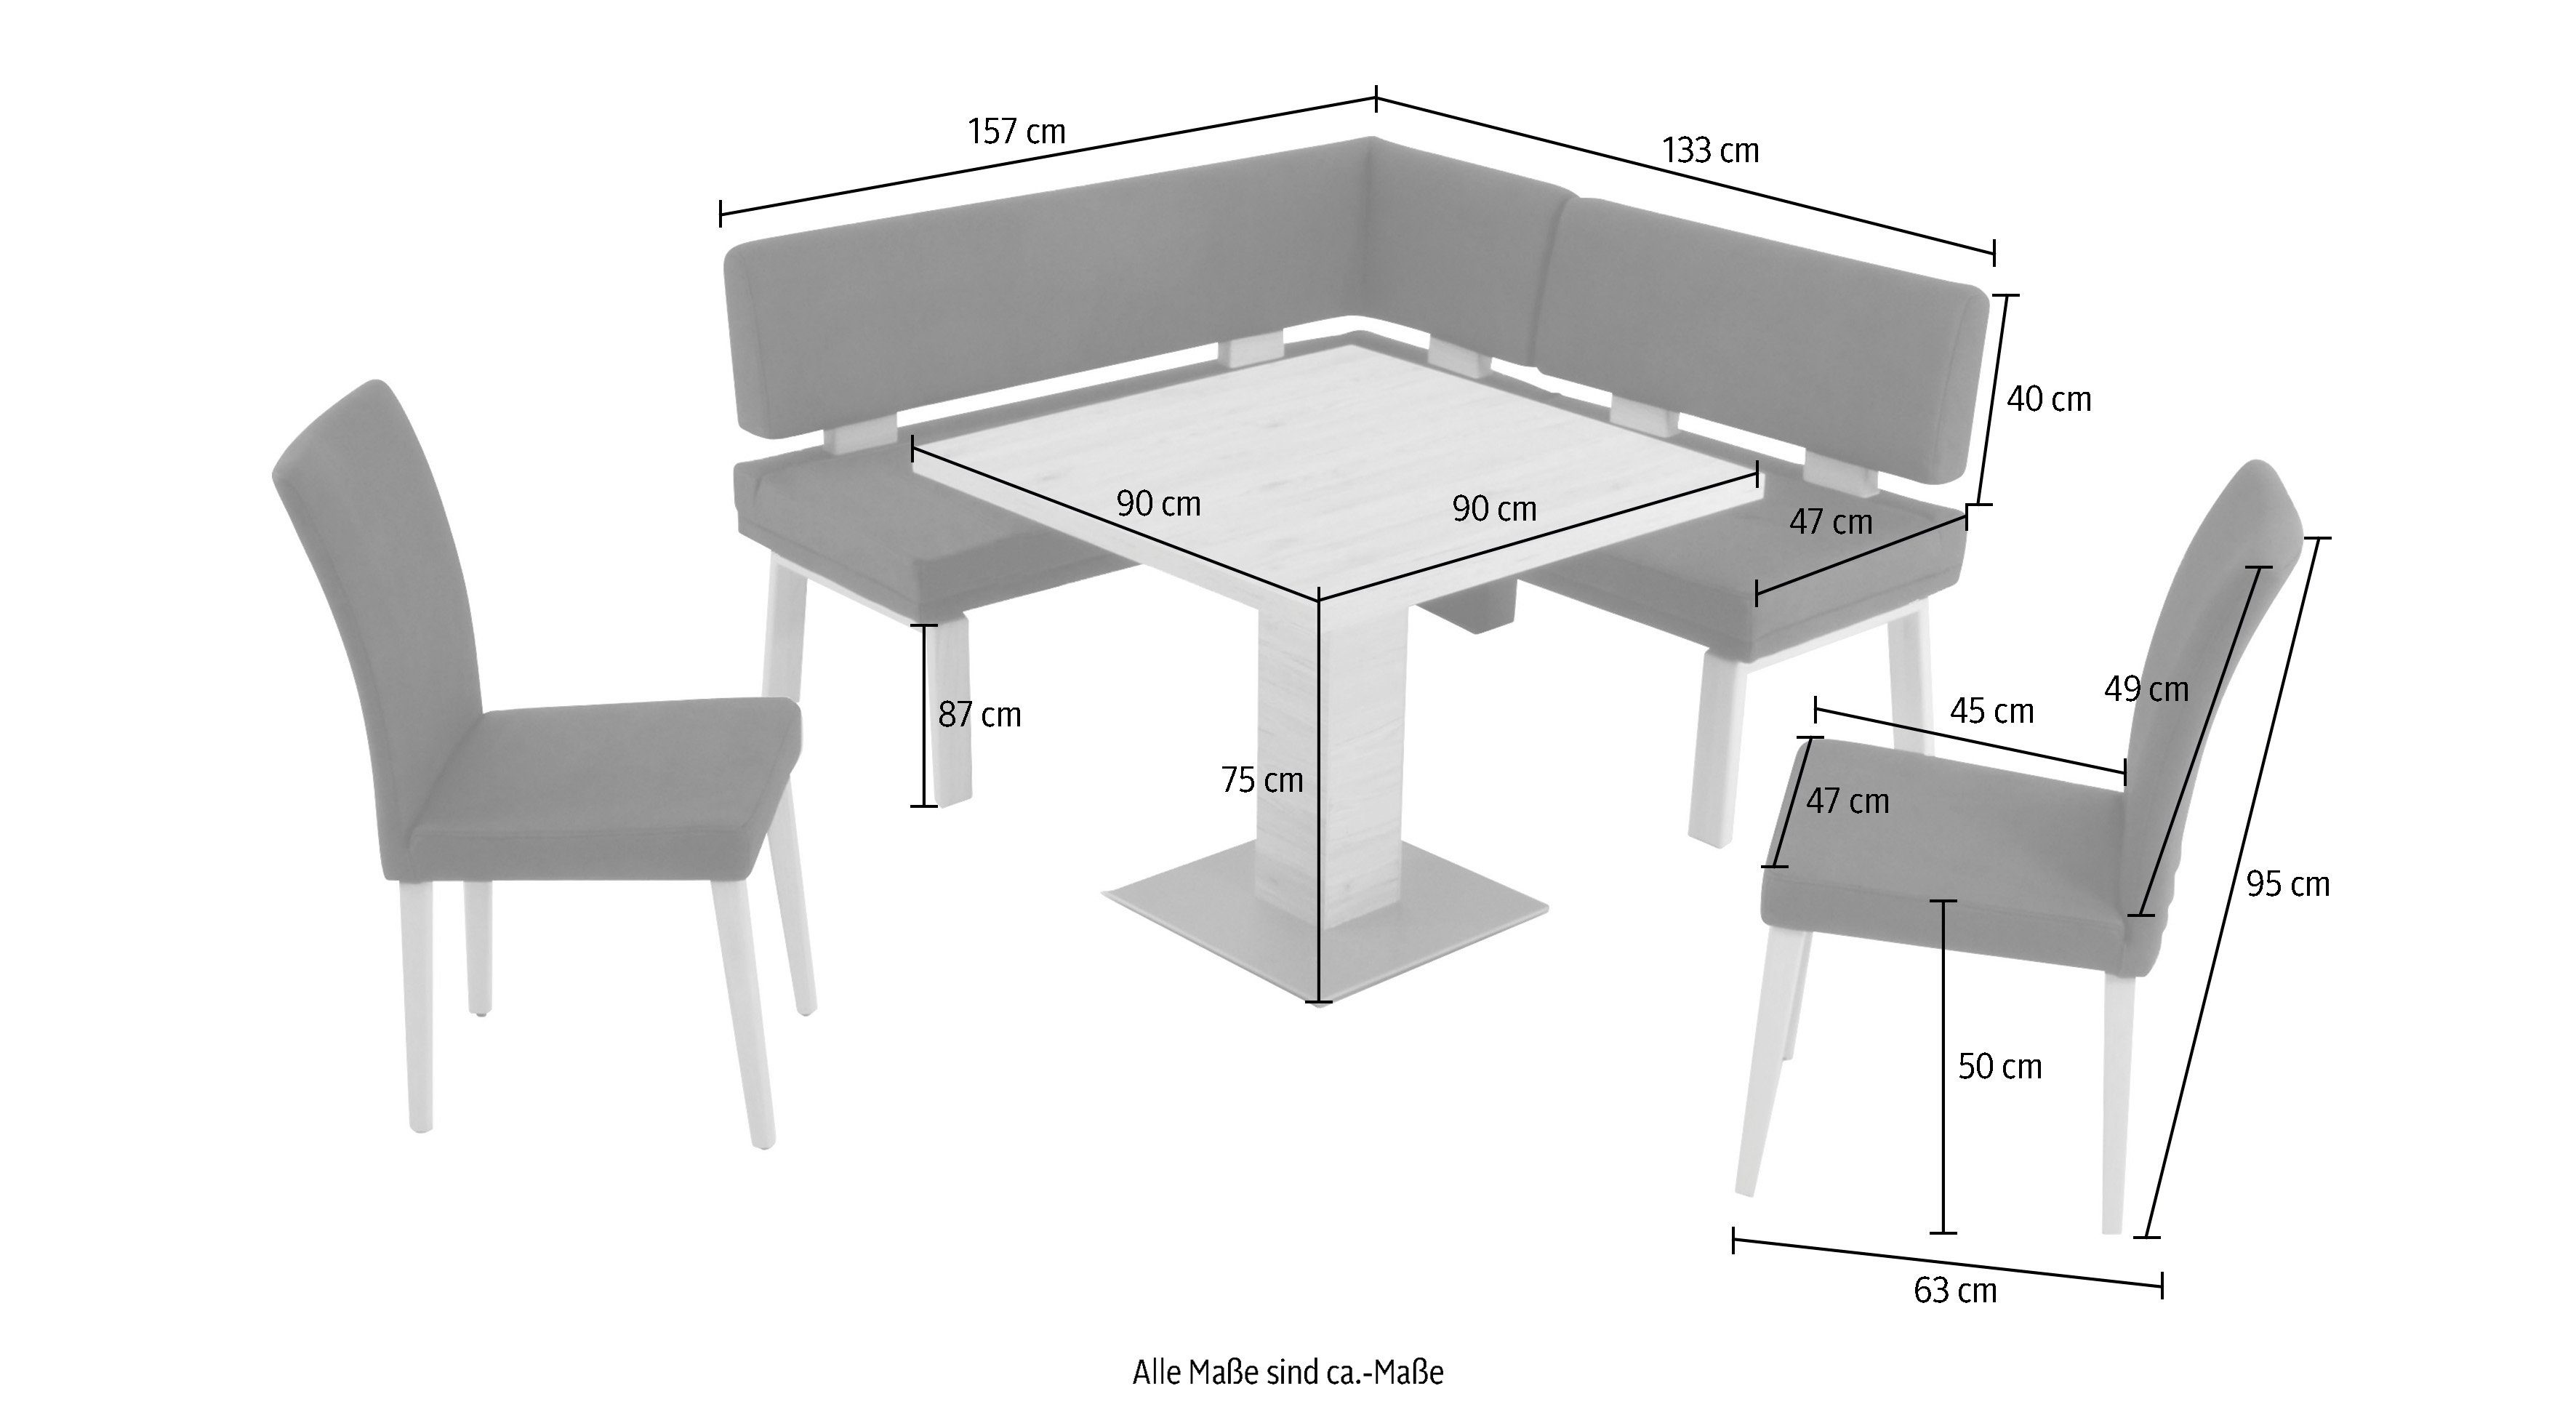 K+W Komfort und I, gleichschenklig Tisch & Eckbankgruppe 157cm, Eiche 90x90cm, zwei darkgrey Wohnen 4-Fußholzstühle Santos